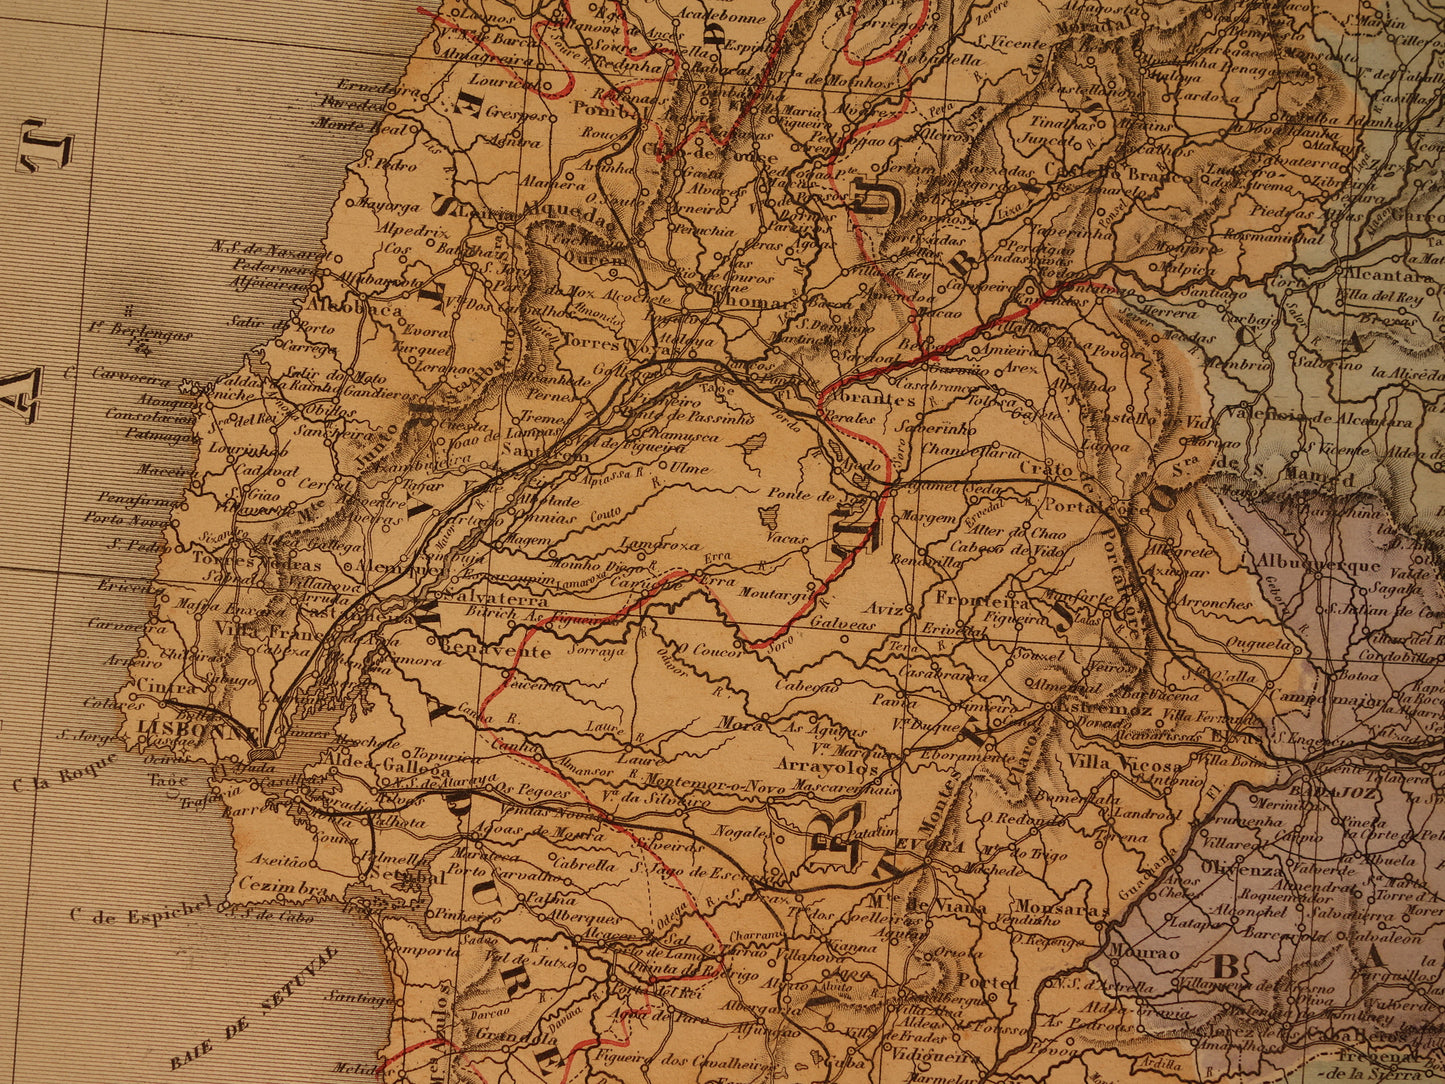 Grote oude landkaart van Spanje en Portugal uit 1880 Zeer mooie handgekleurde Franse antieke kaart Originele vintage kaarten